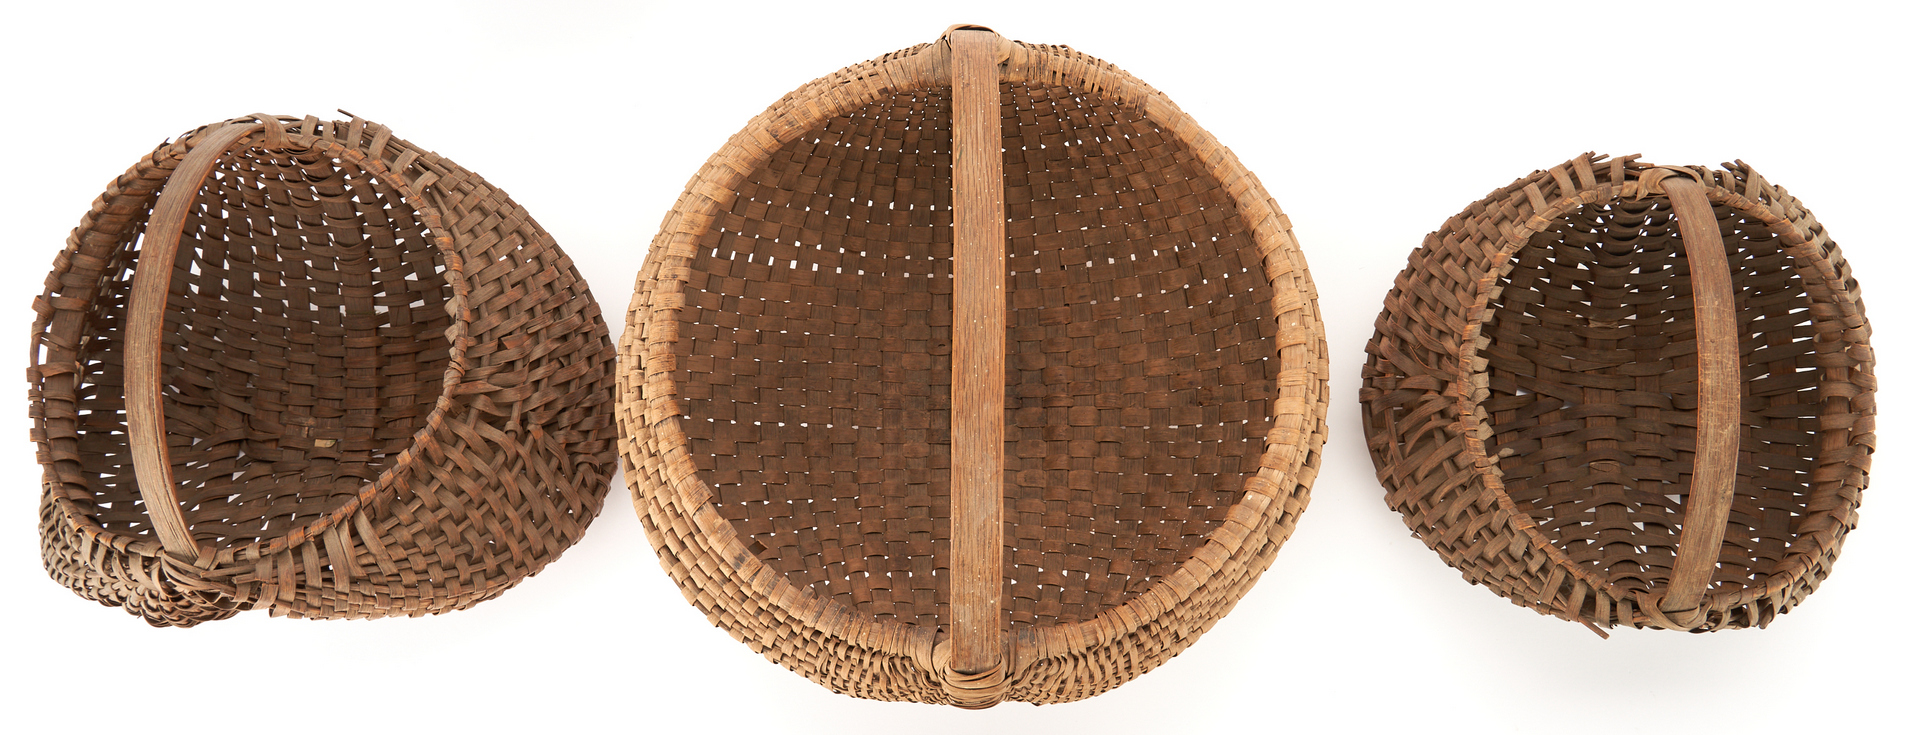 Lot 143: 3 Early Southern Split Oak Baskets